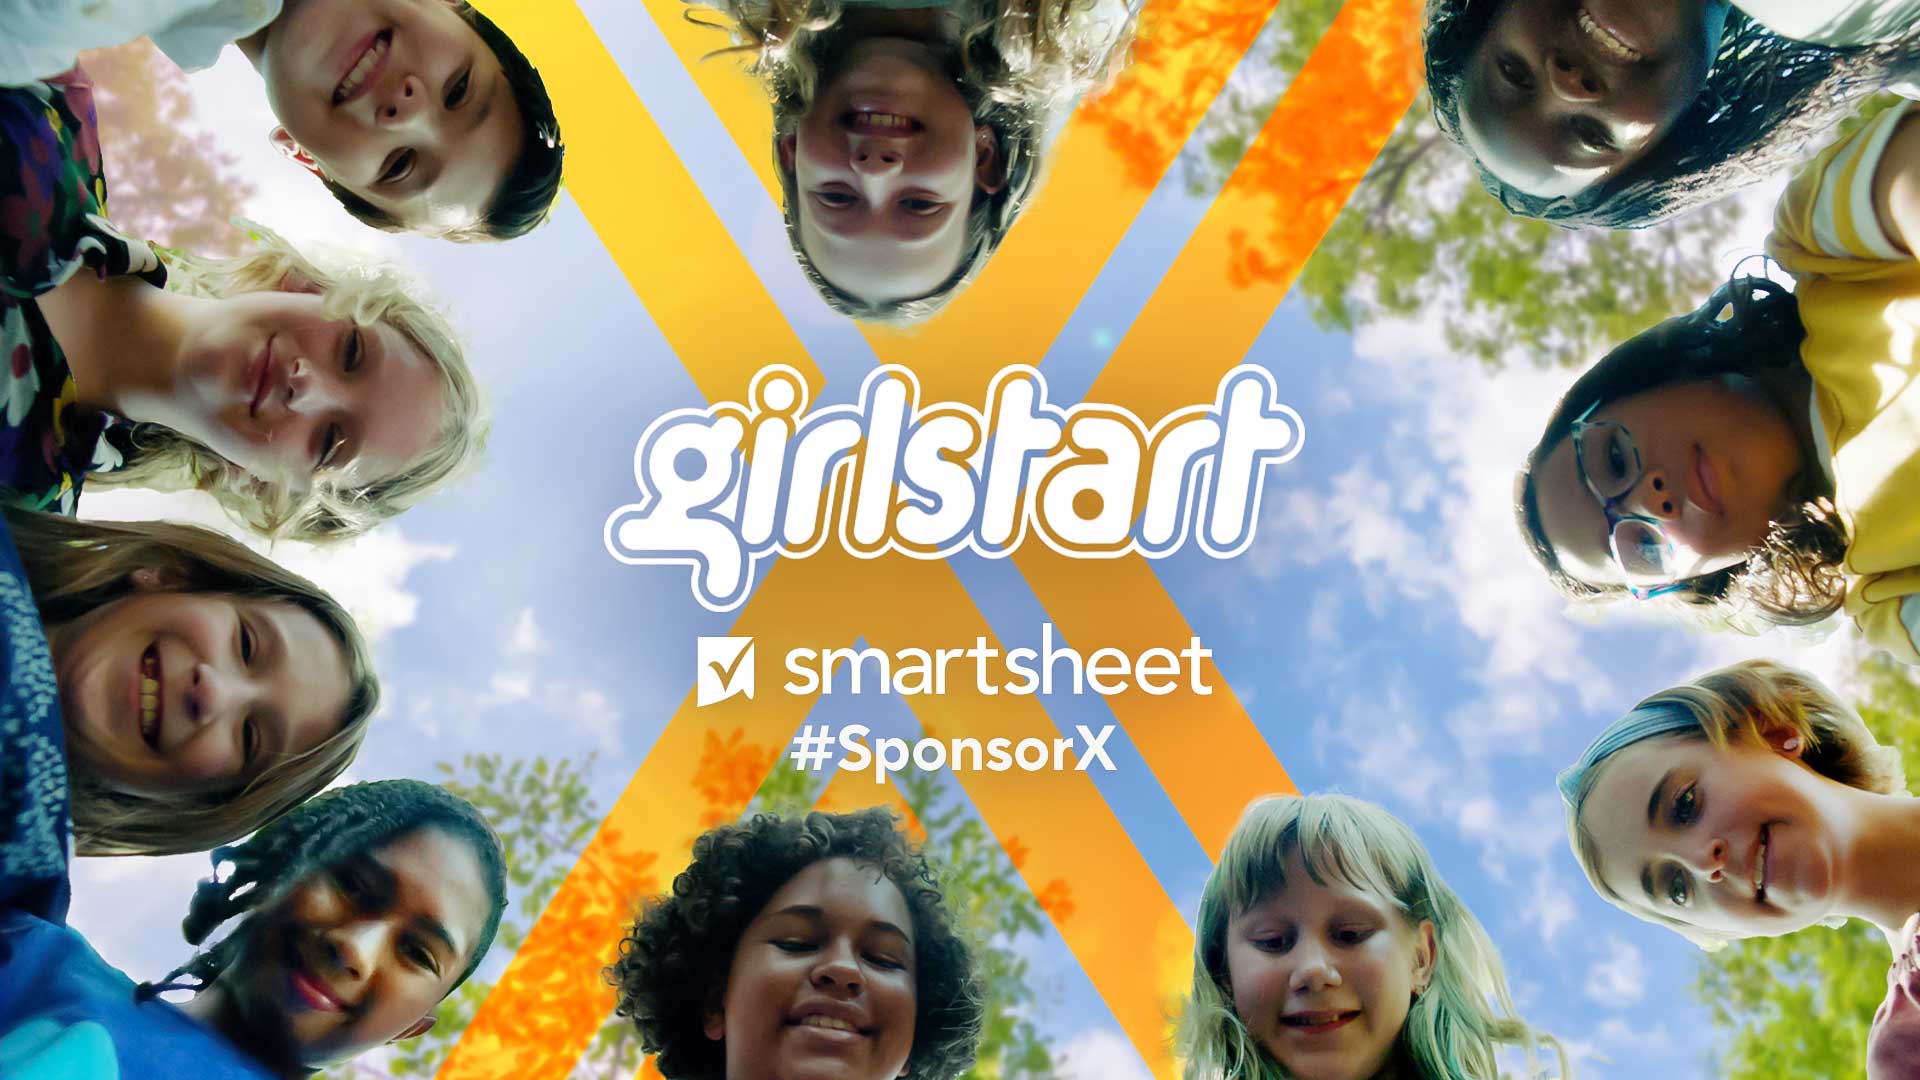 girlstart-sponsor-x-smartsheet-circle-faces